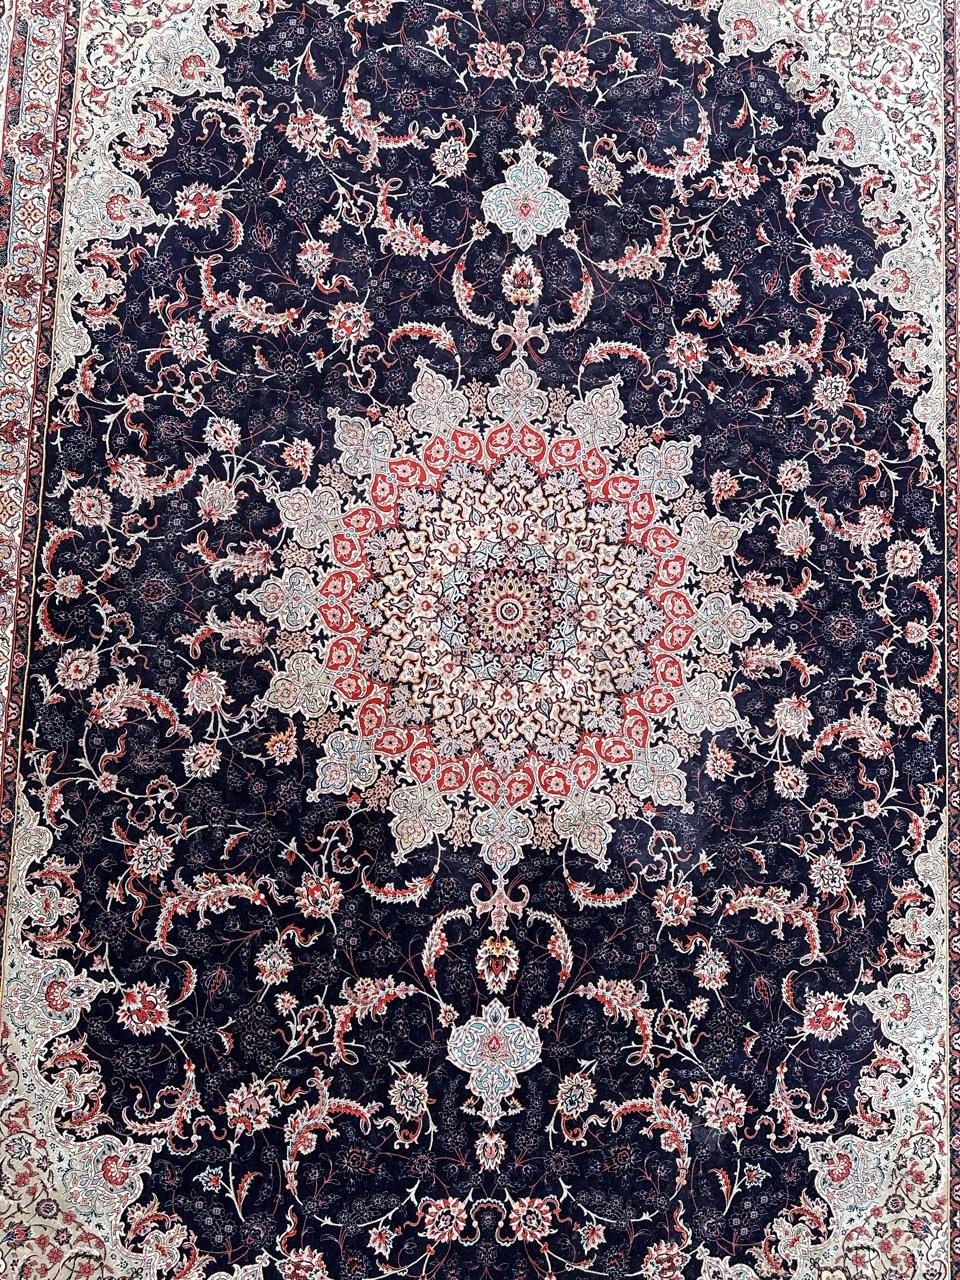 Très beau grand tapis de Tabriz avec de beaux motifs floraux et de belles couleurs, réalisé avec des méthodes mécaniques avec de la laine.

✨✨✨
